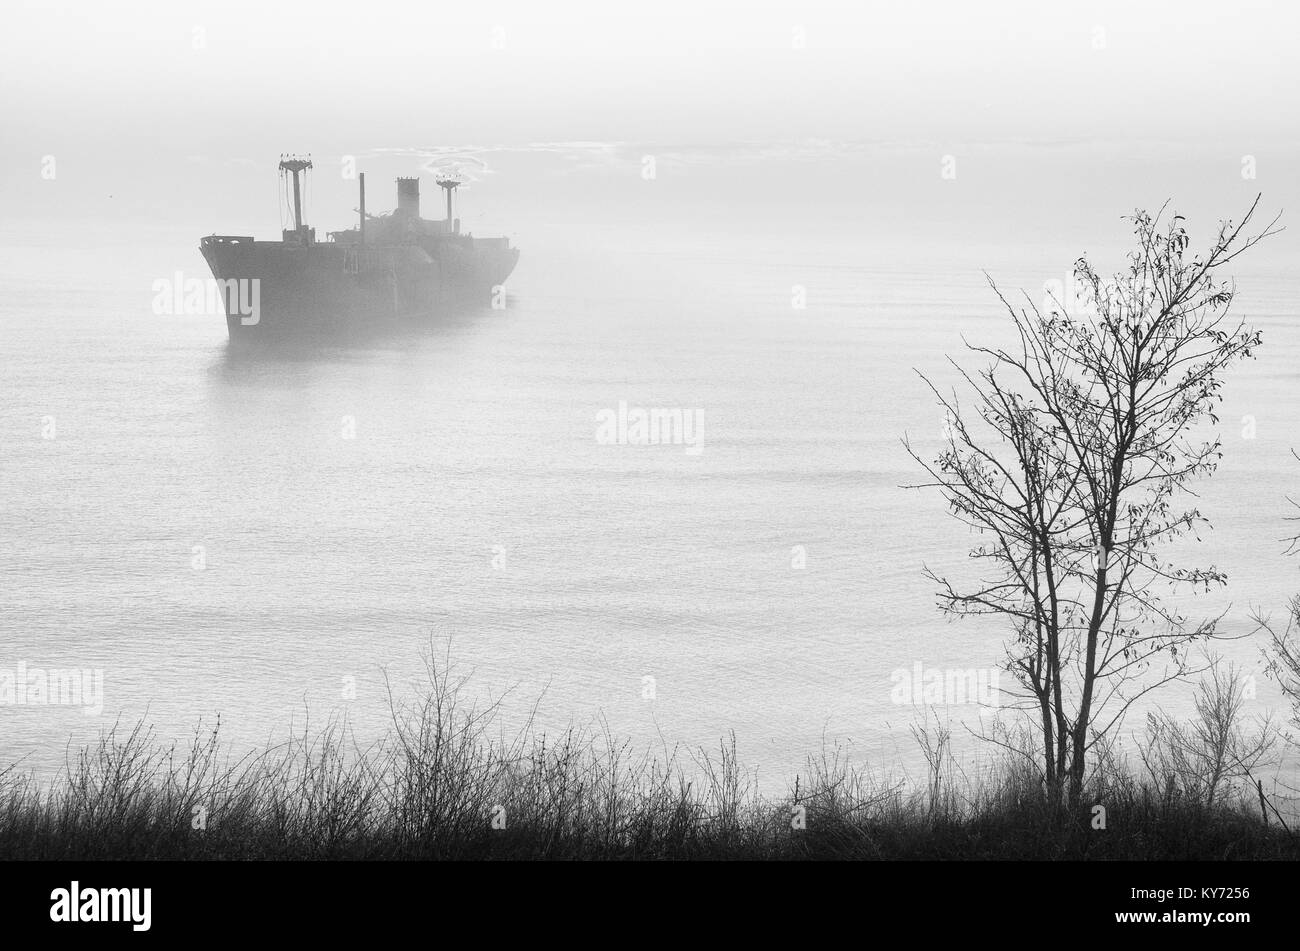 Schönen sonnenaufgang Haze mit einem griechischen Schiffbruch Evangelia am Ufer des Schwarzen Meeres in der Nähe von turda, Rumänien. Stockfoto